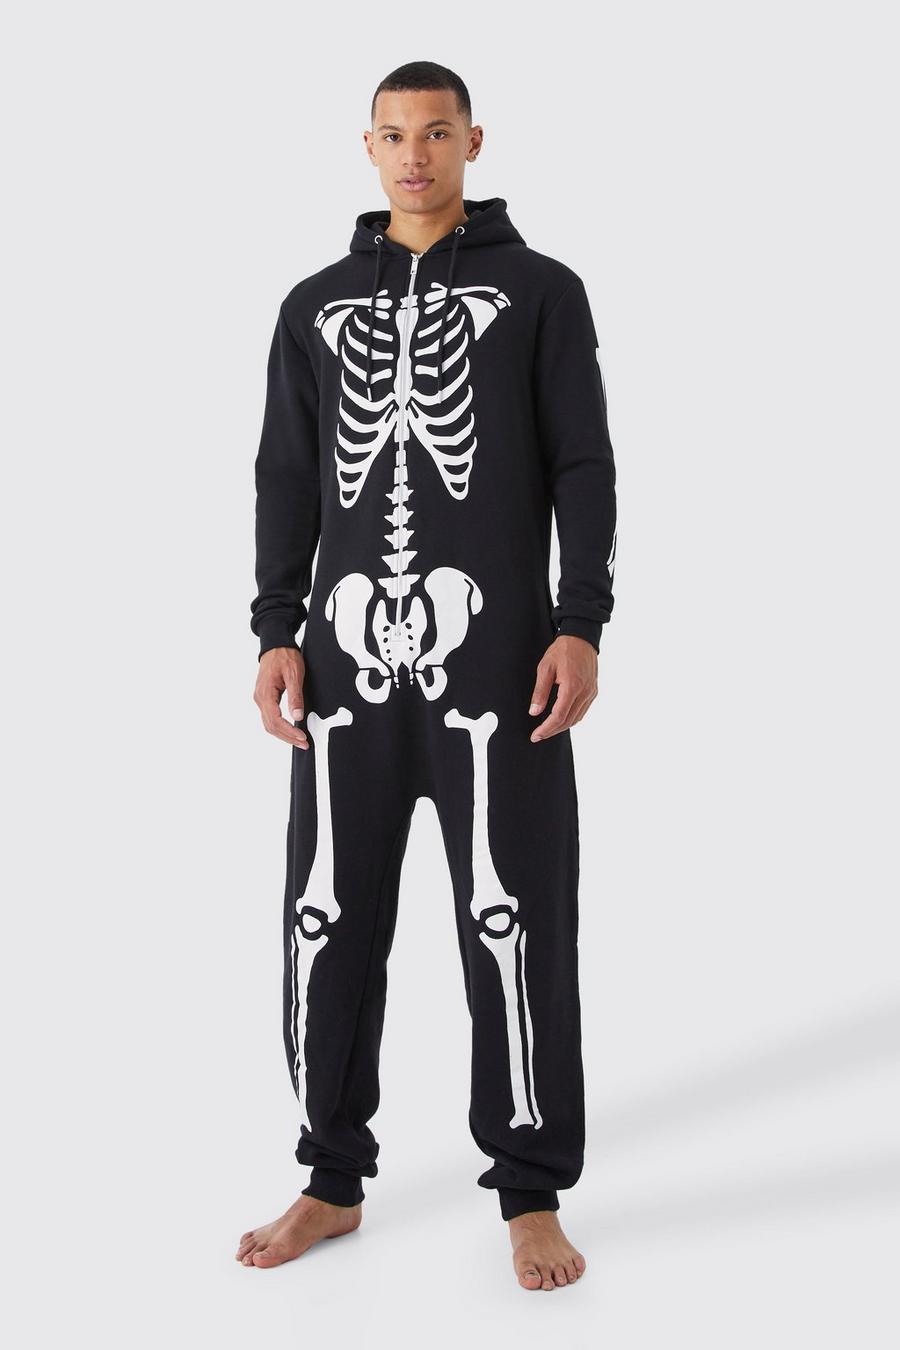 Pijama enterizo Tall de Halloween con esqueleto, Black